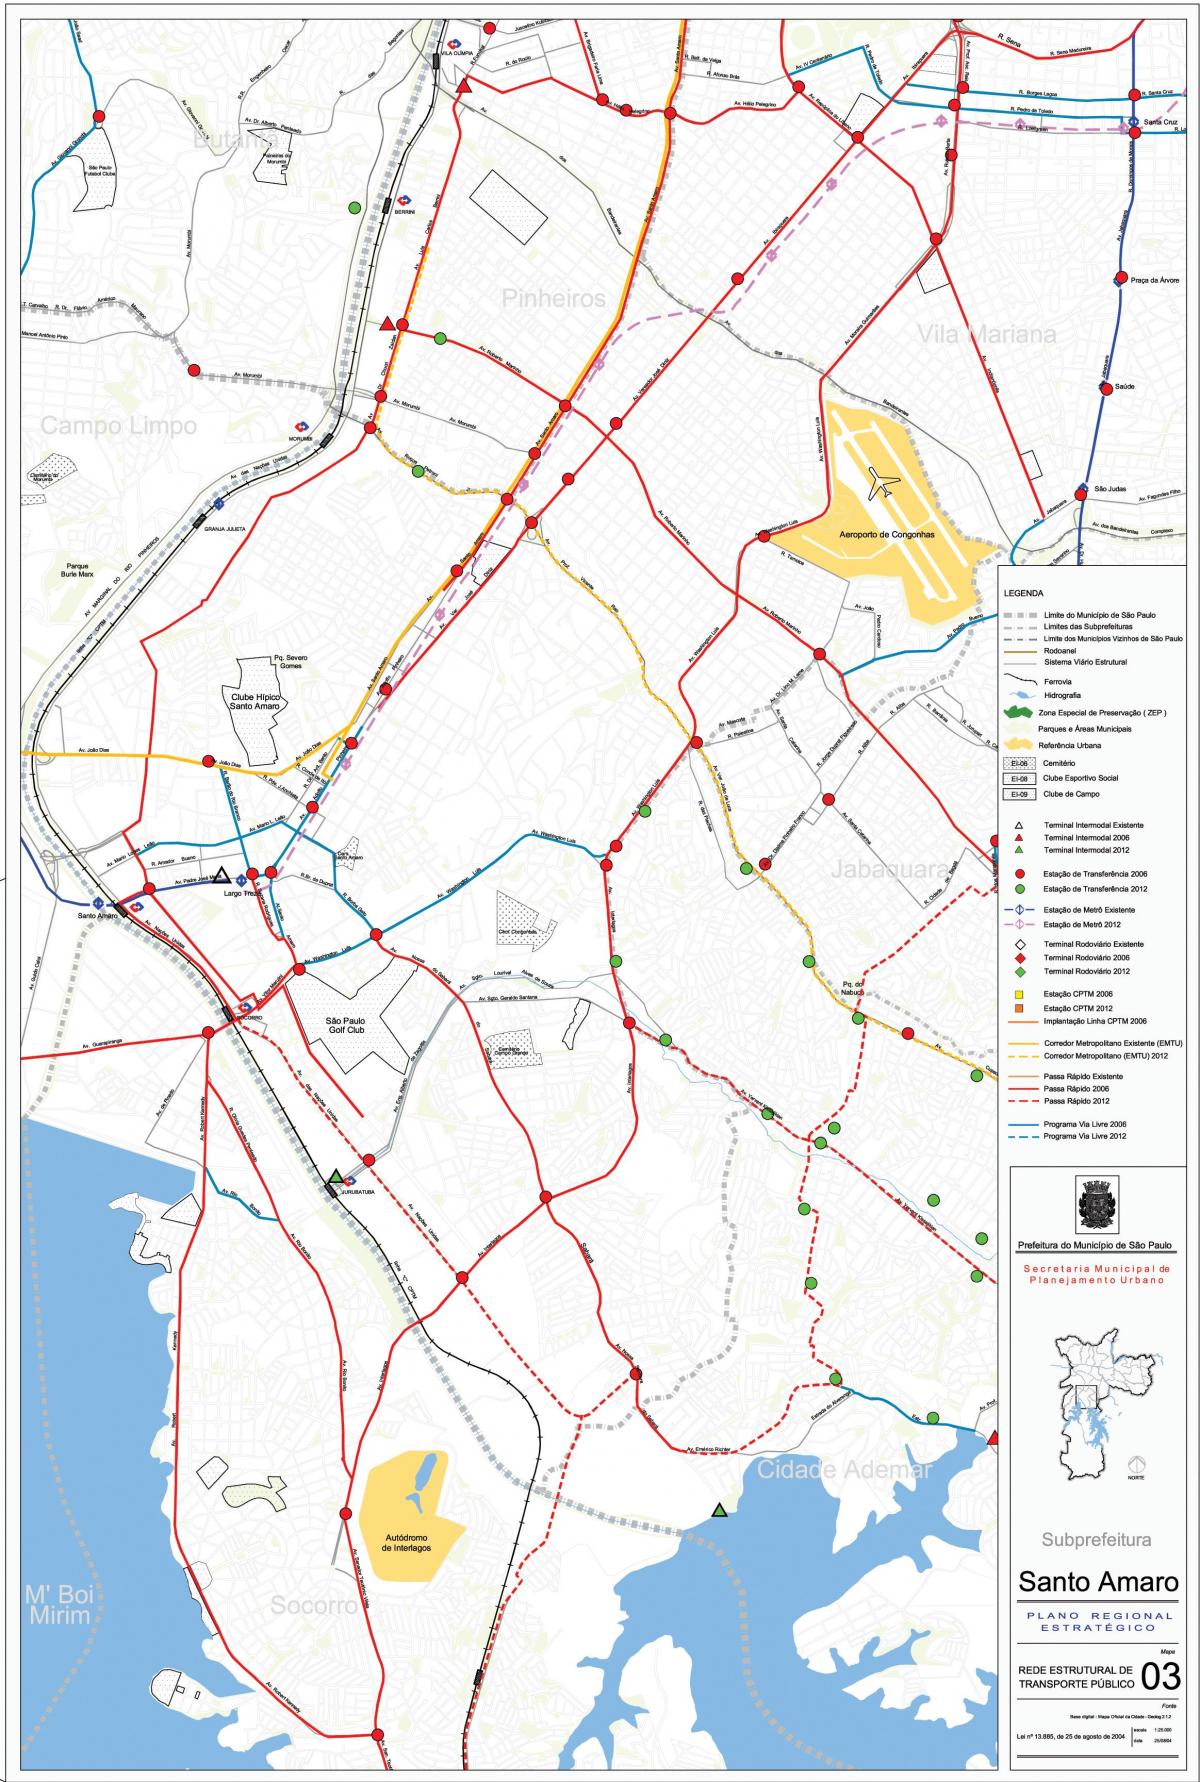 Karte Santo Amaro Sao Paulo - Sabiedriskais transports